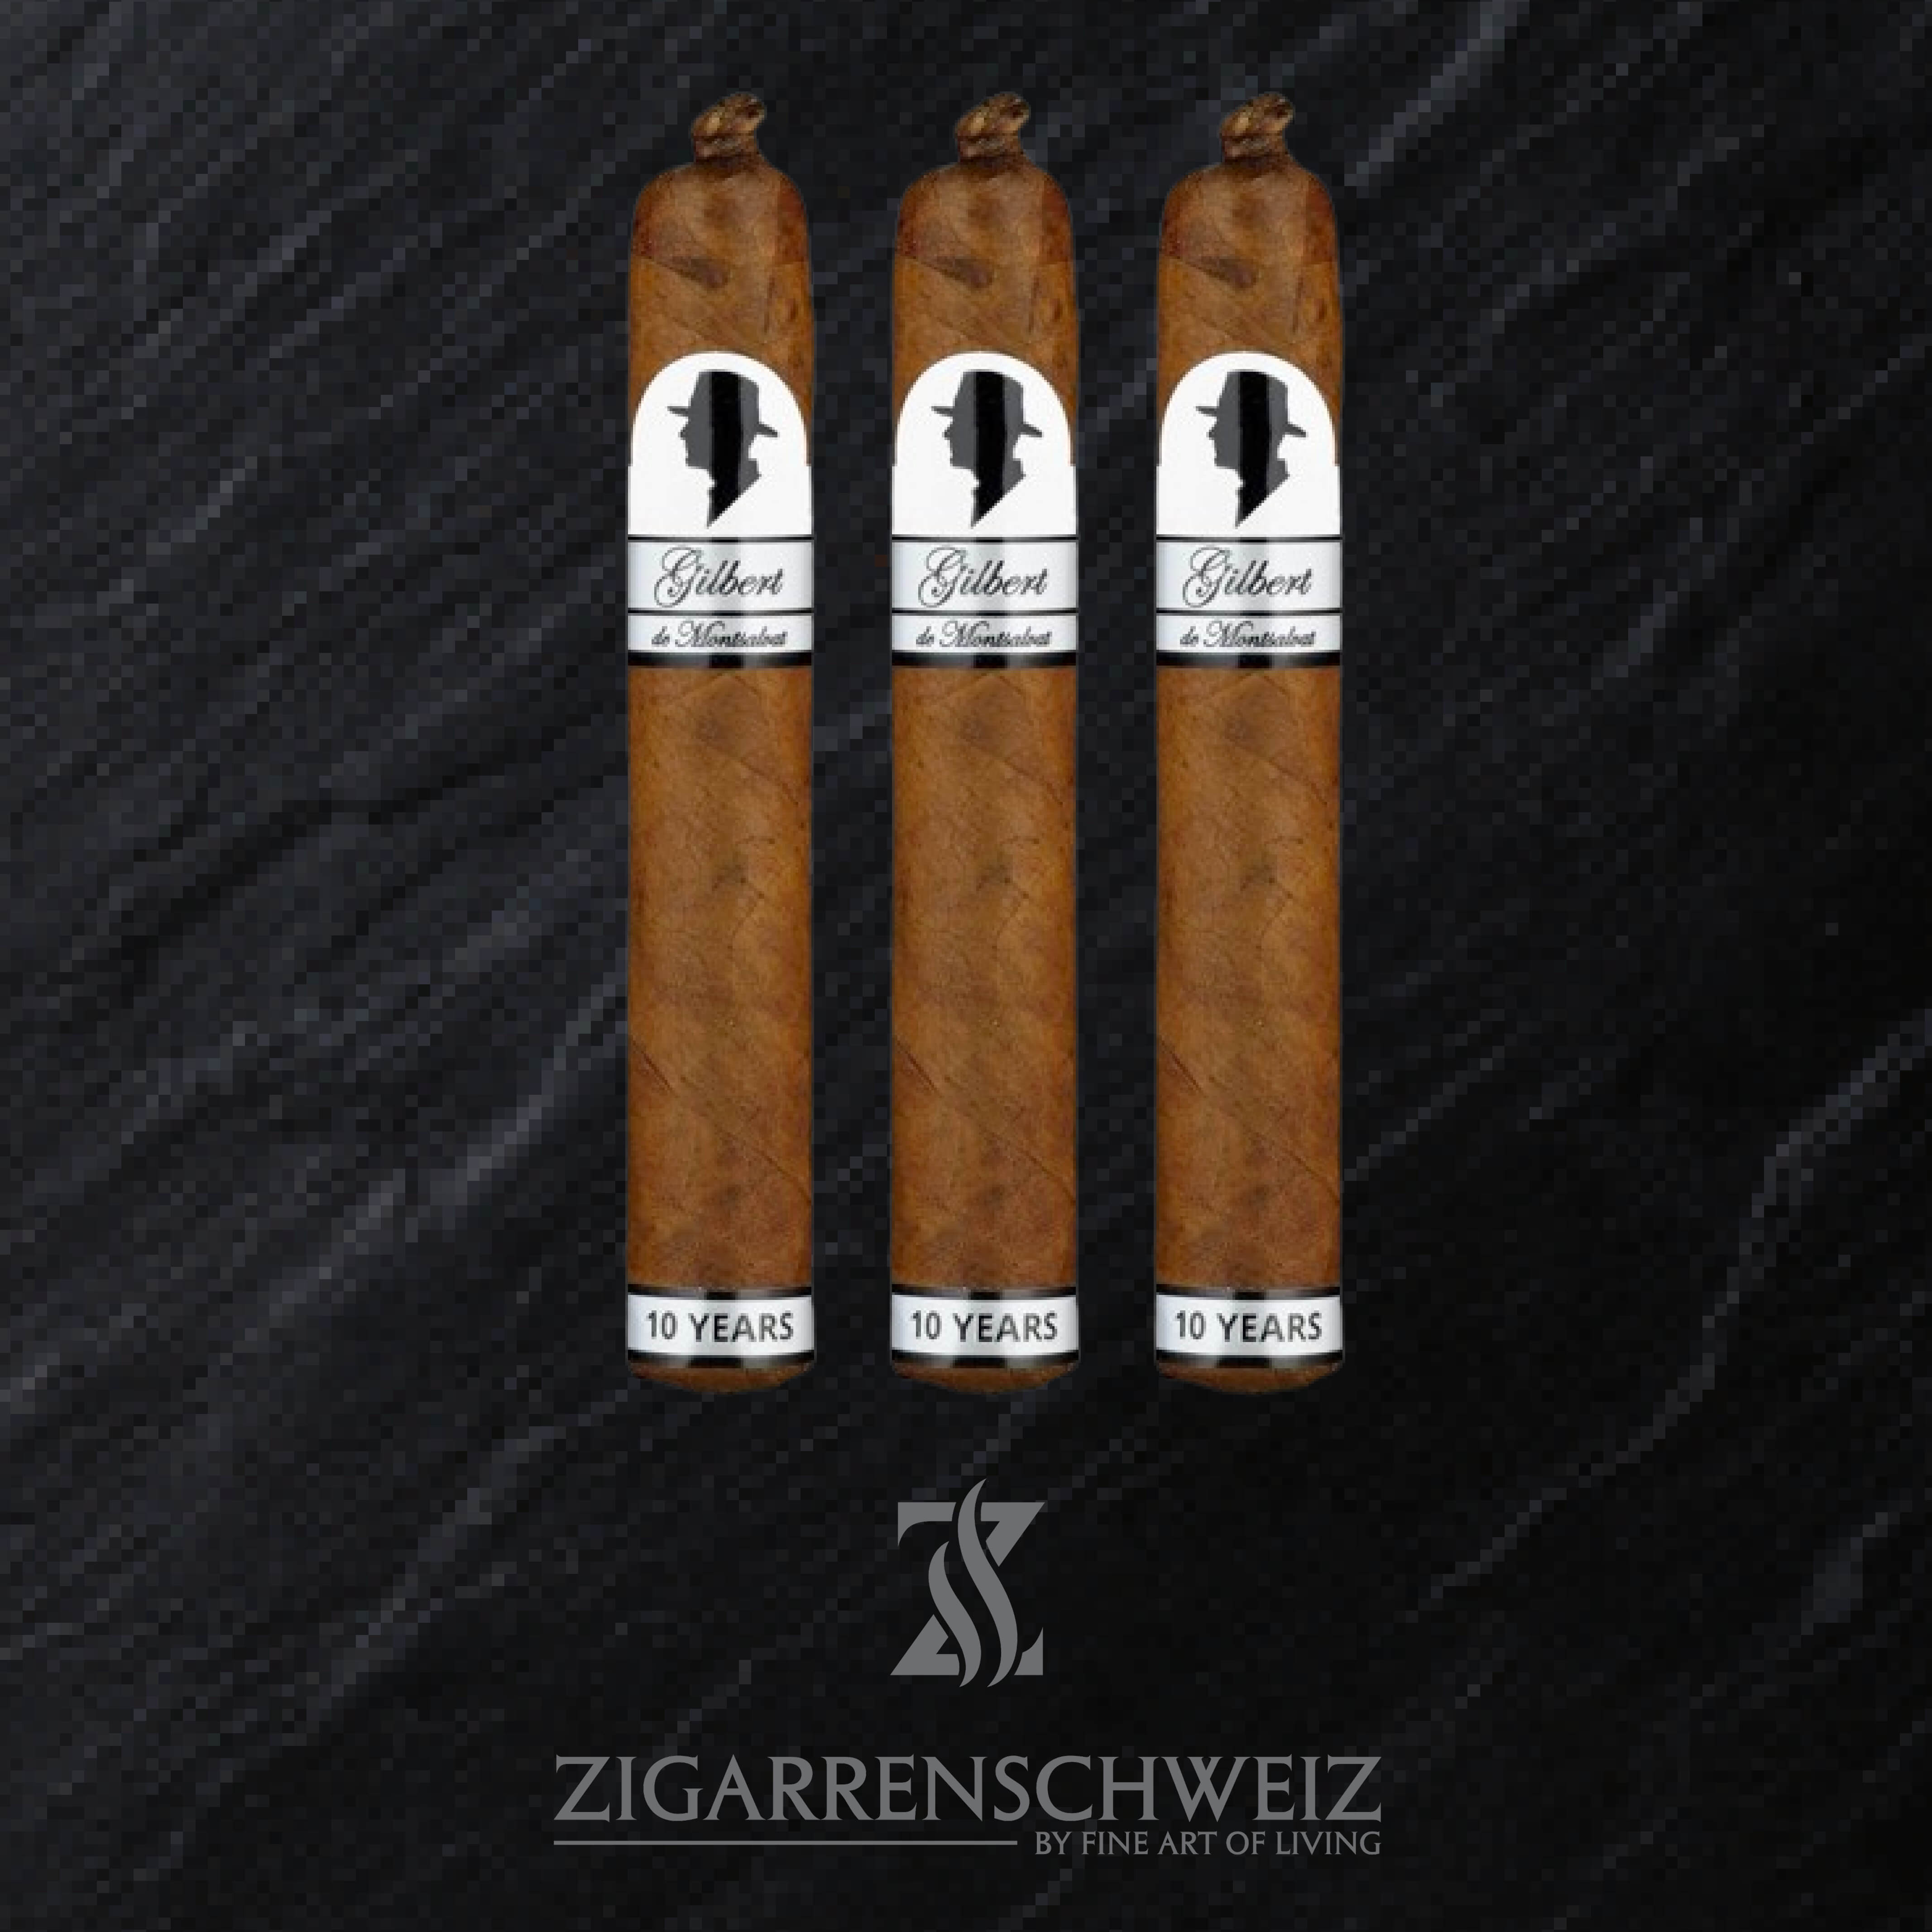 Gilbert de Montsalvat 10 years Anniversary Gordo Zigarren Etui von Zigarrenschweiz